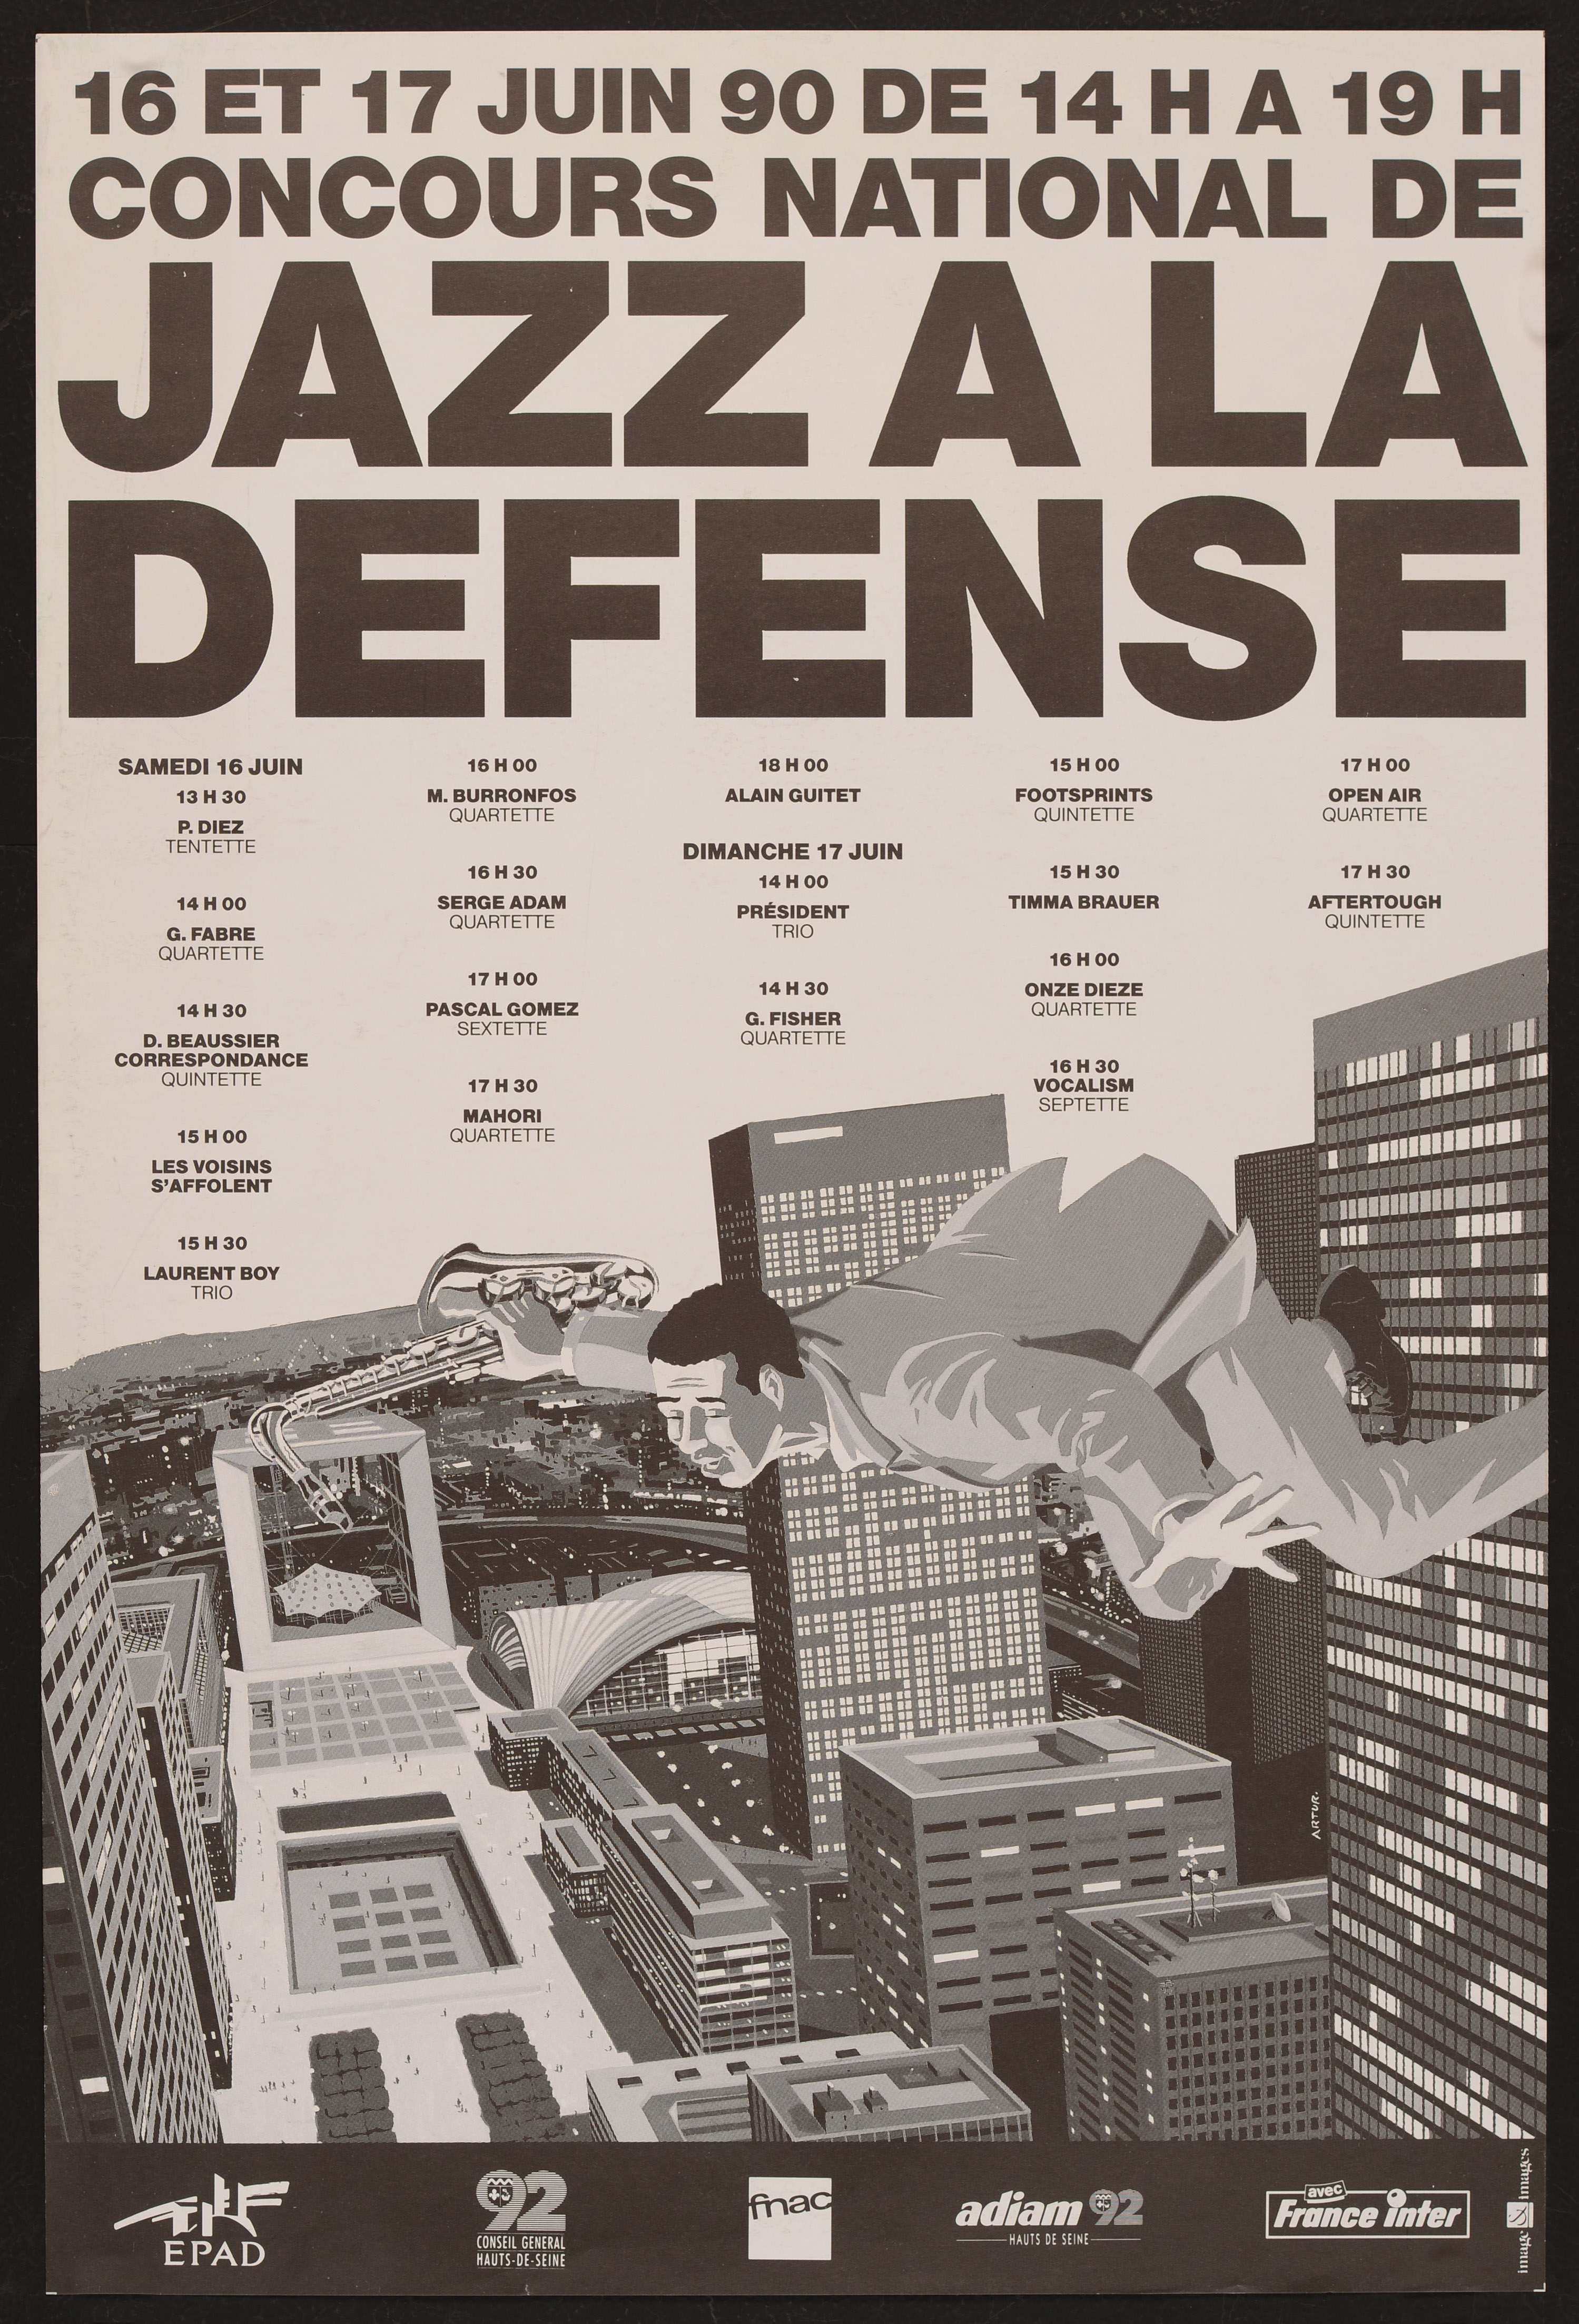 Concours national de Jazz à la Défense. 16 à 17 juin 1990. - Affiche ill. coul. ; 57 x 38 cm.